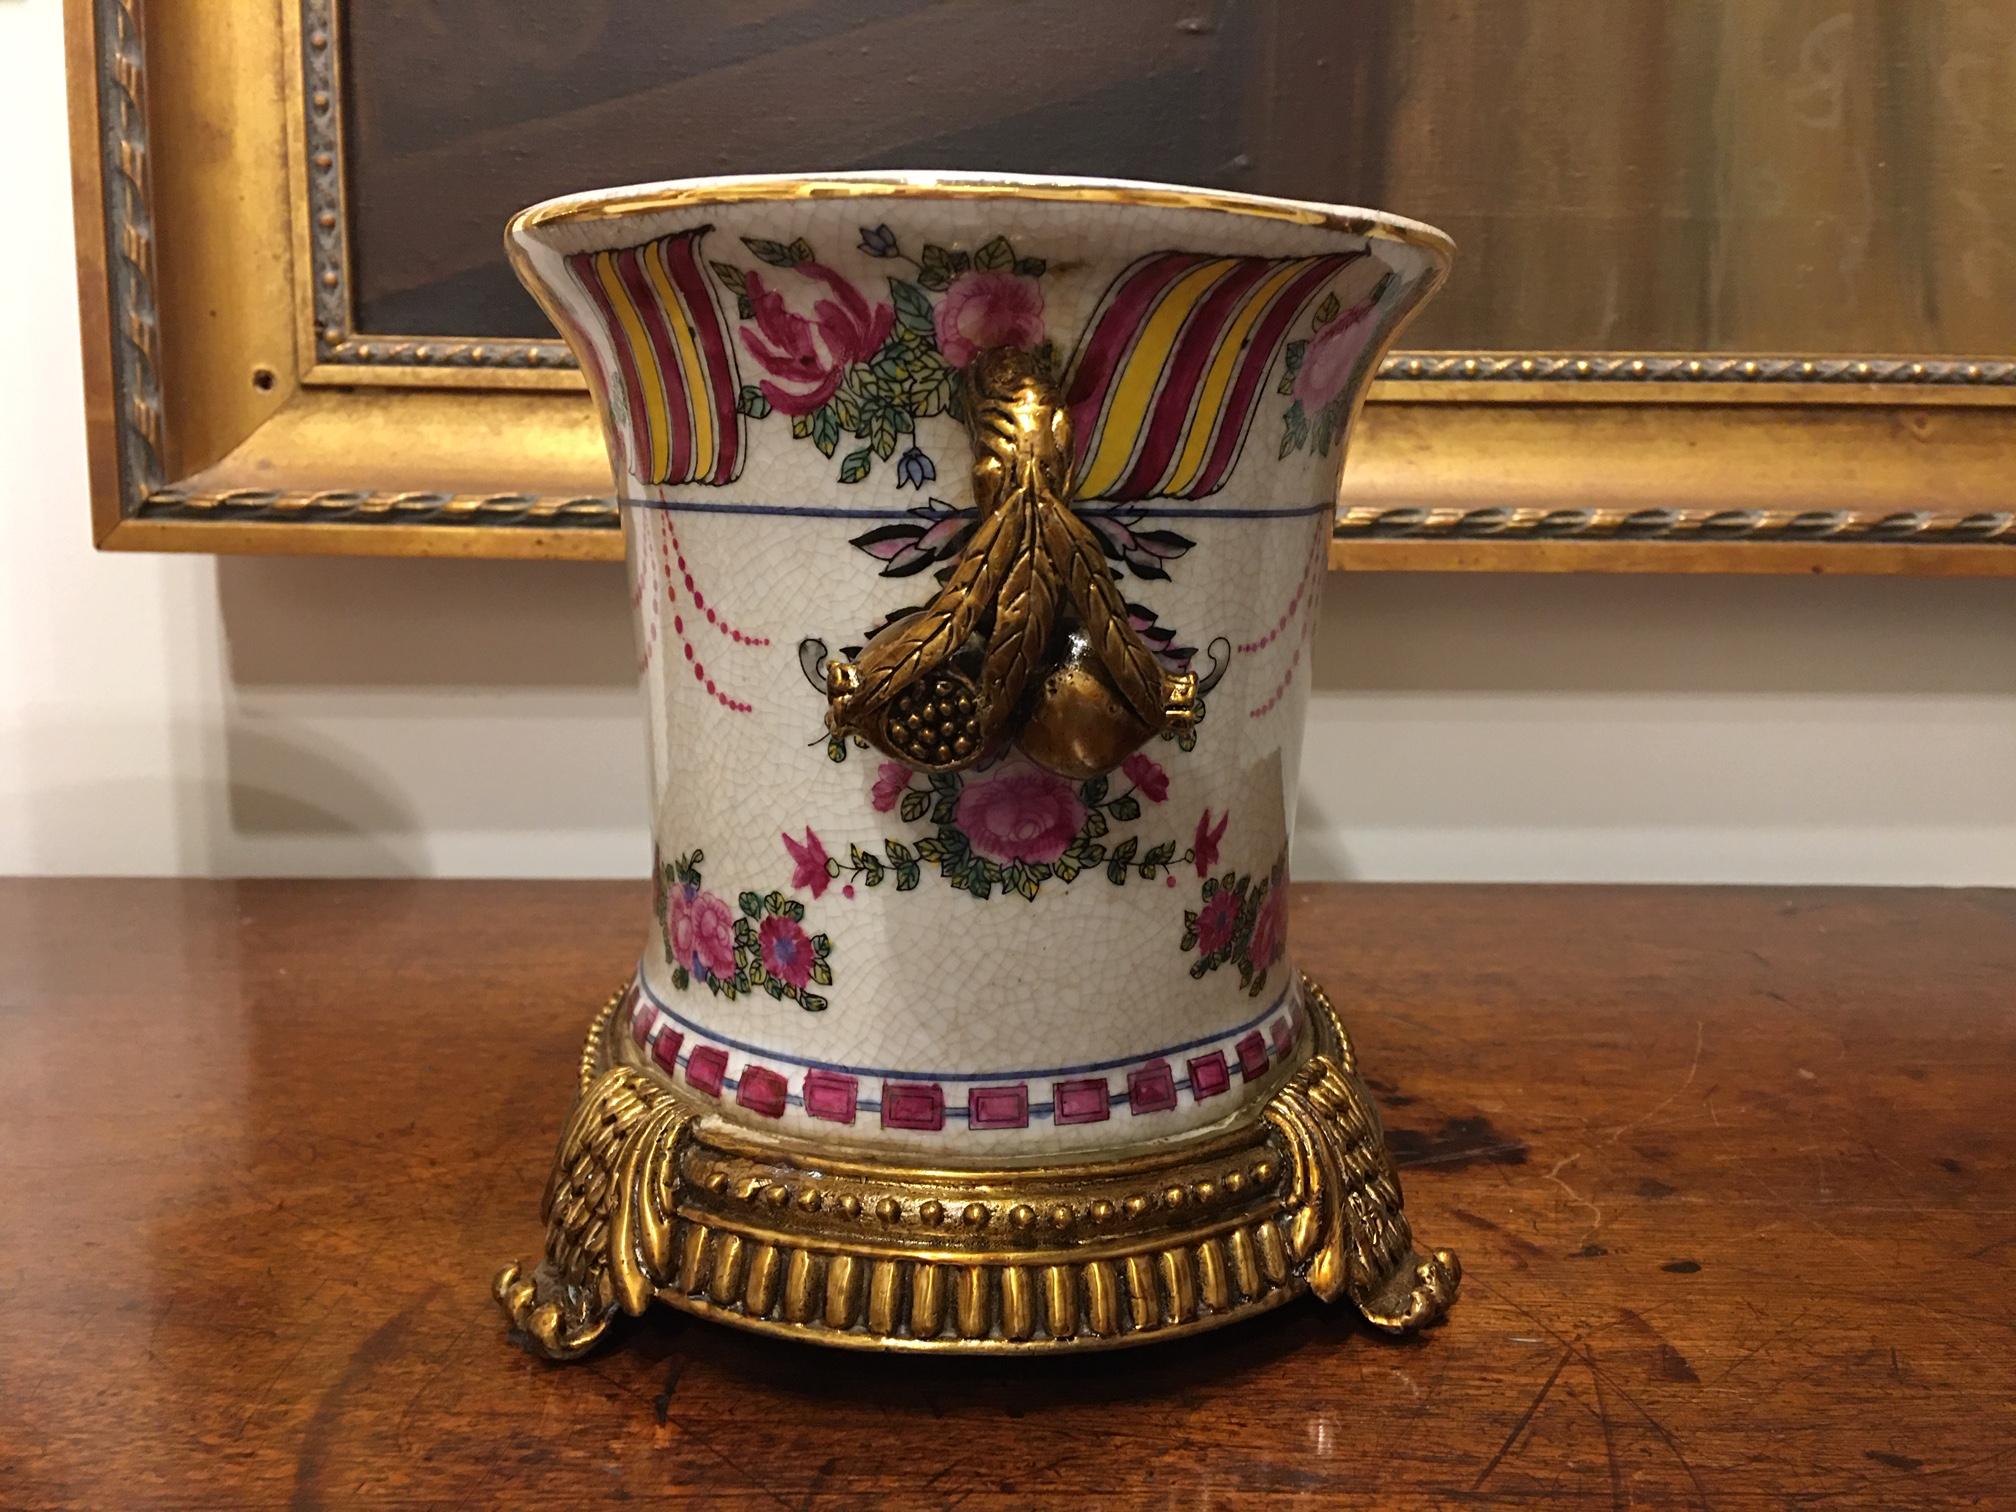 Pair of Porcelain Cache Pots or Jardinières with a Floral Motif, 20th Century 1